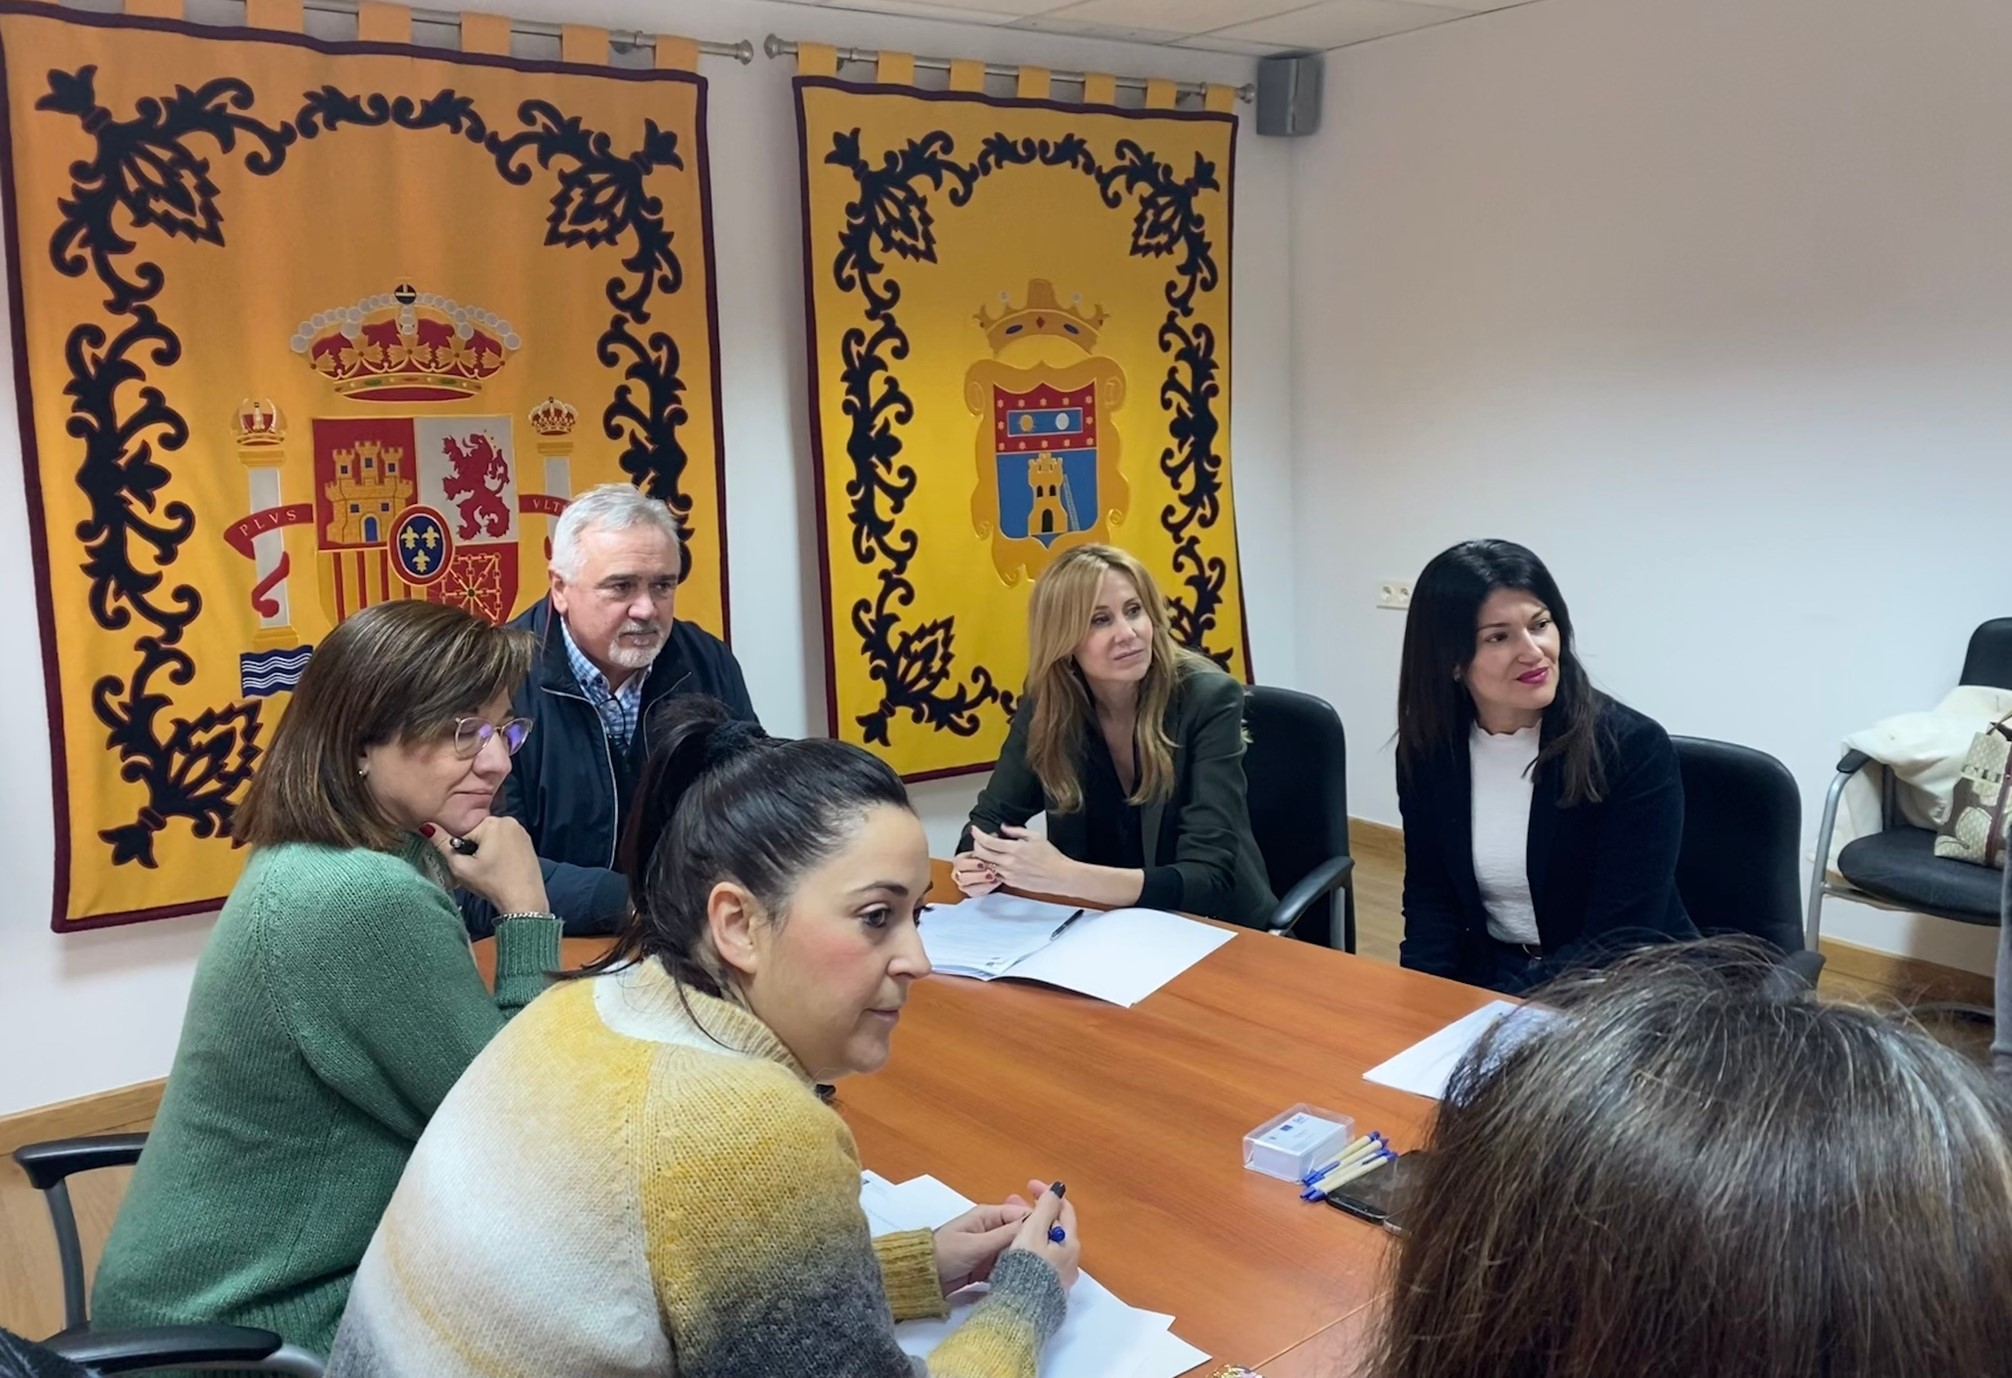 La directora del SEF, Marisa López, se reunió hoy con el alcalde de Moratalla, Jesús Amo, e interlocutores sociales del municipio, así como responsables de la oficina del SEF de la localidad.